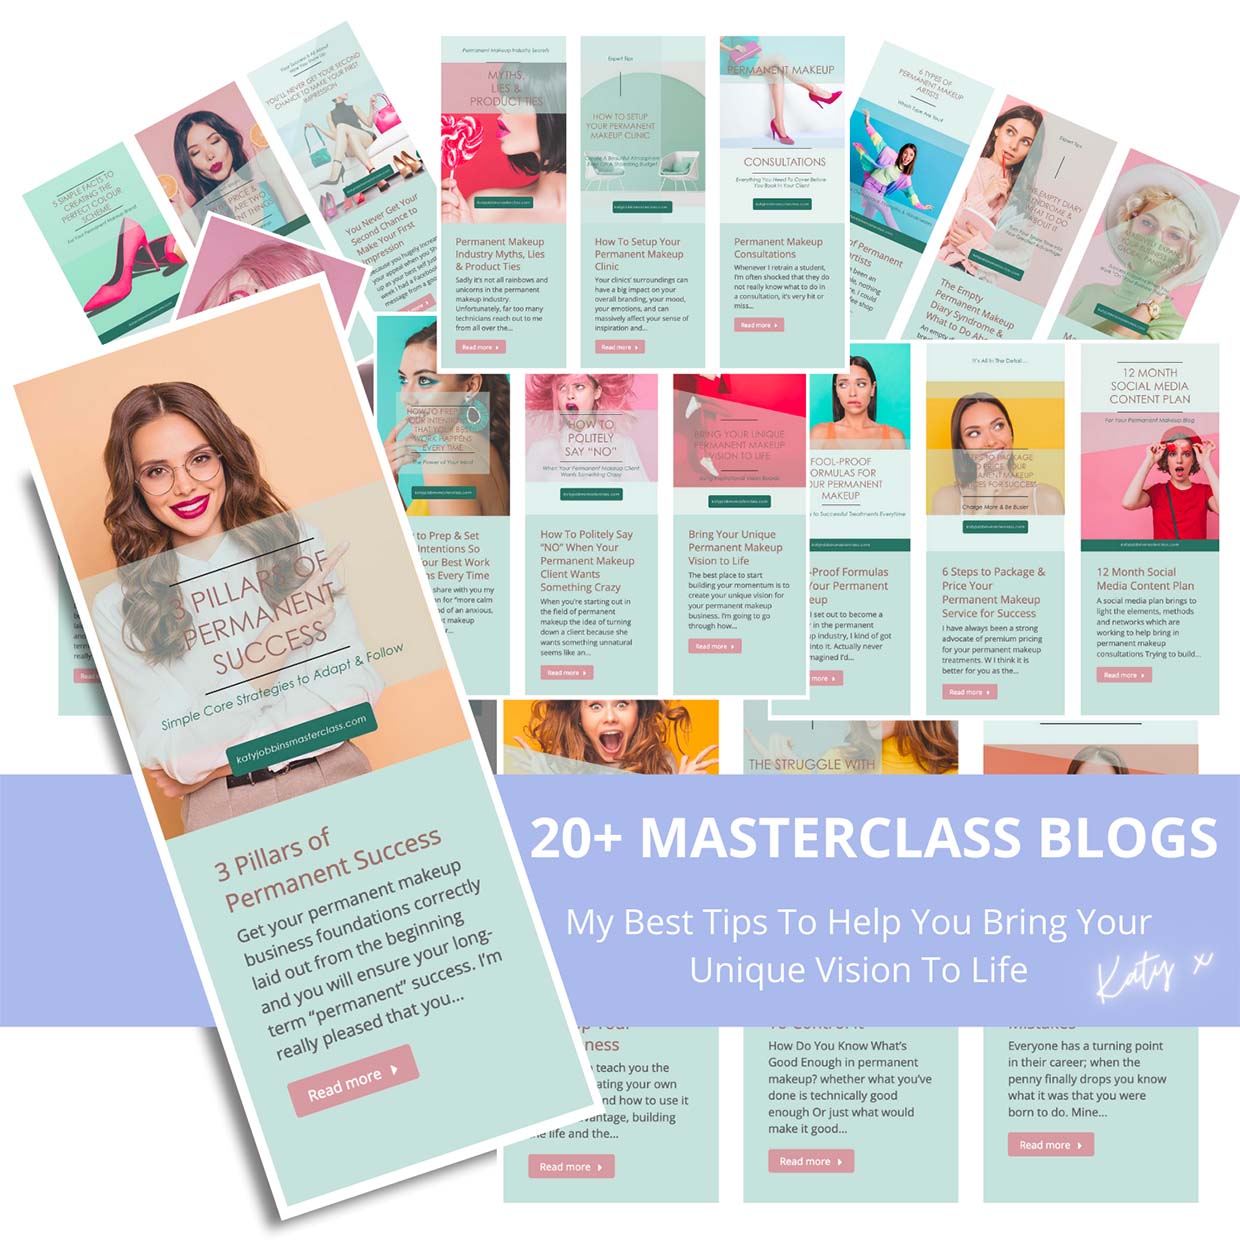 Katy Jobbins Masterclass Blogs